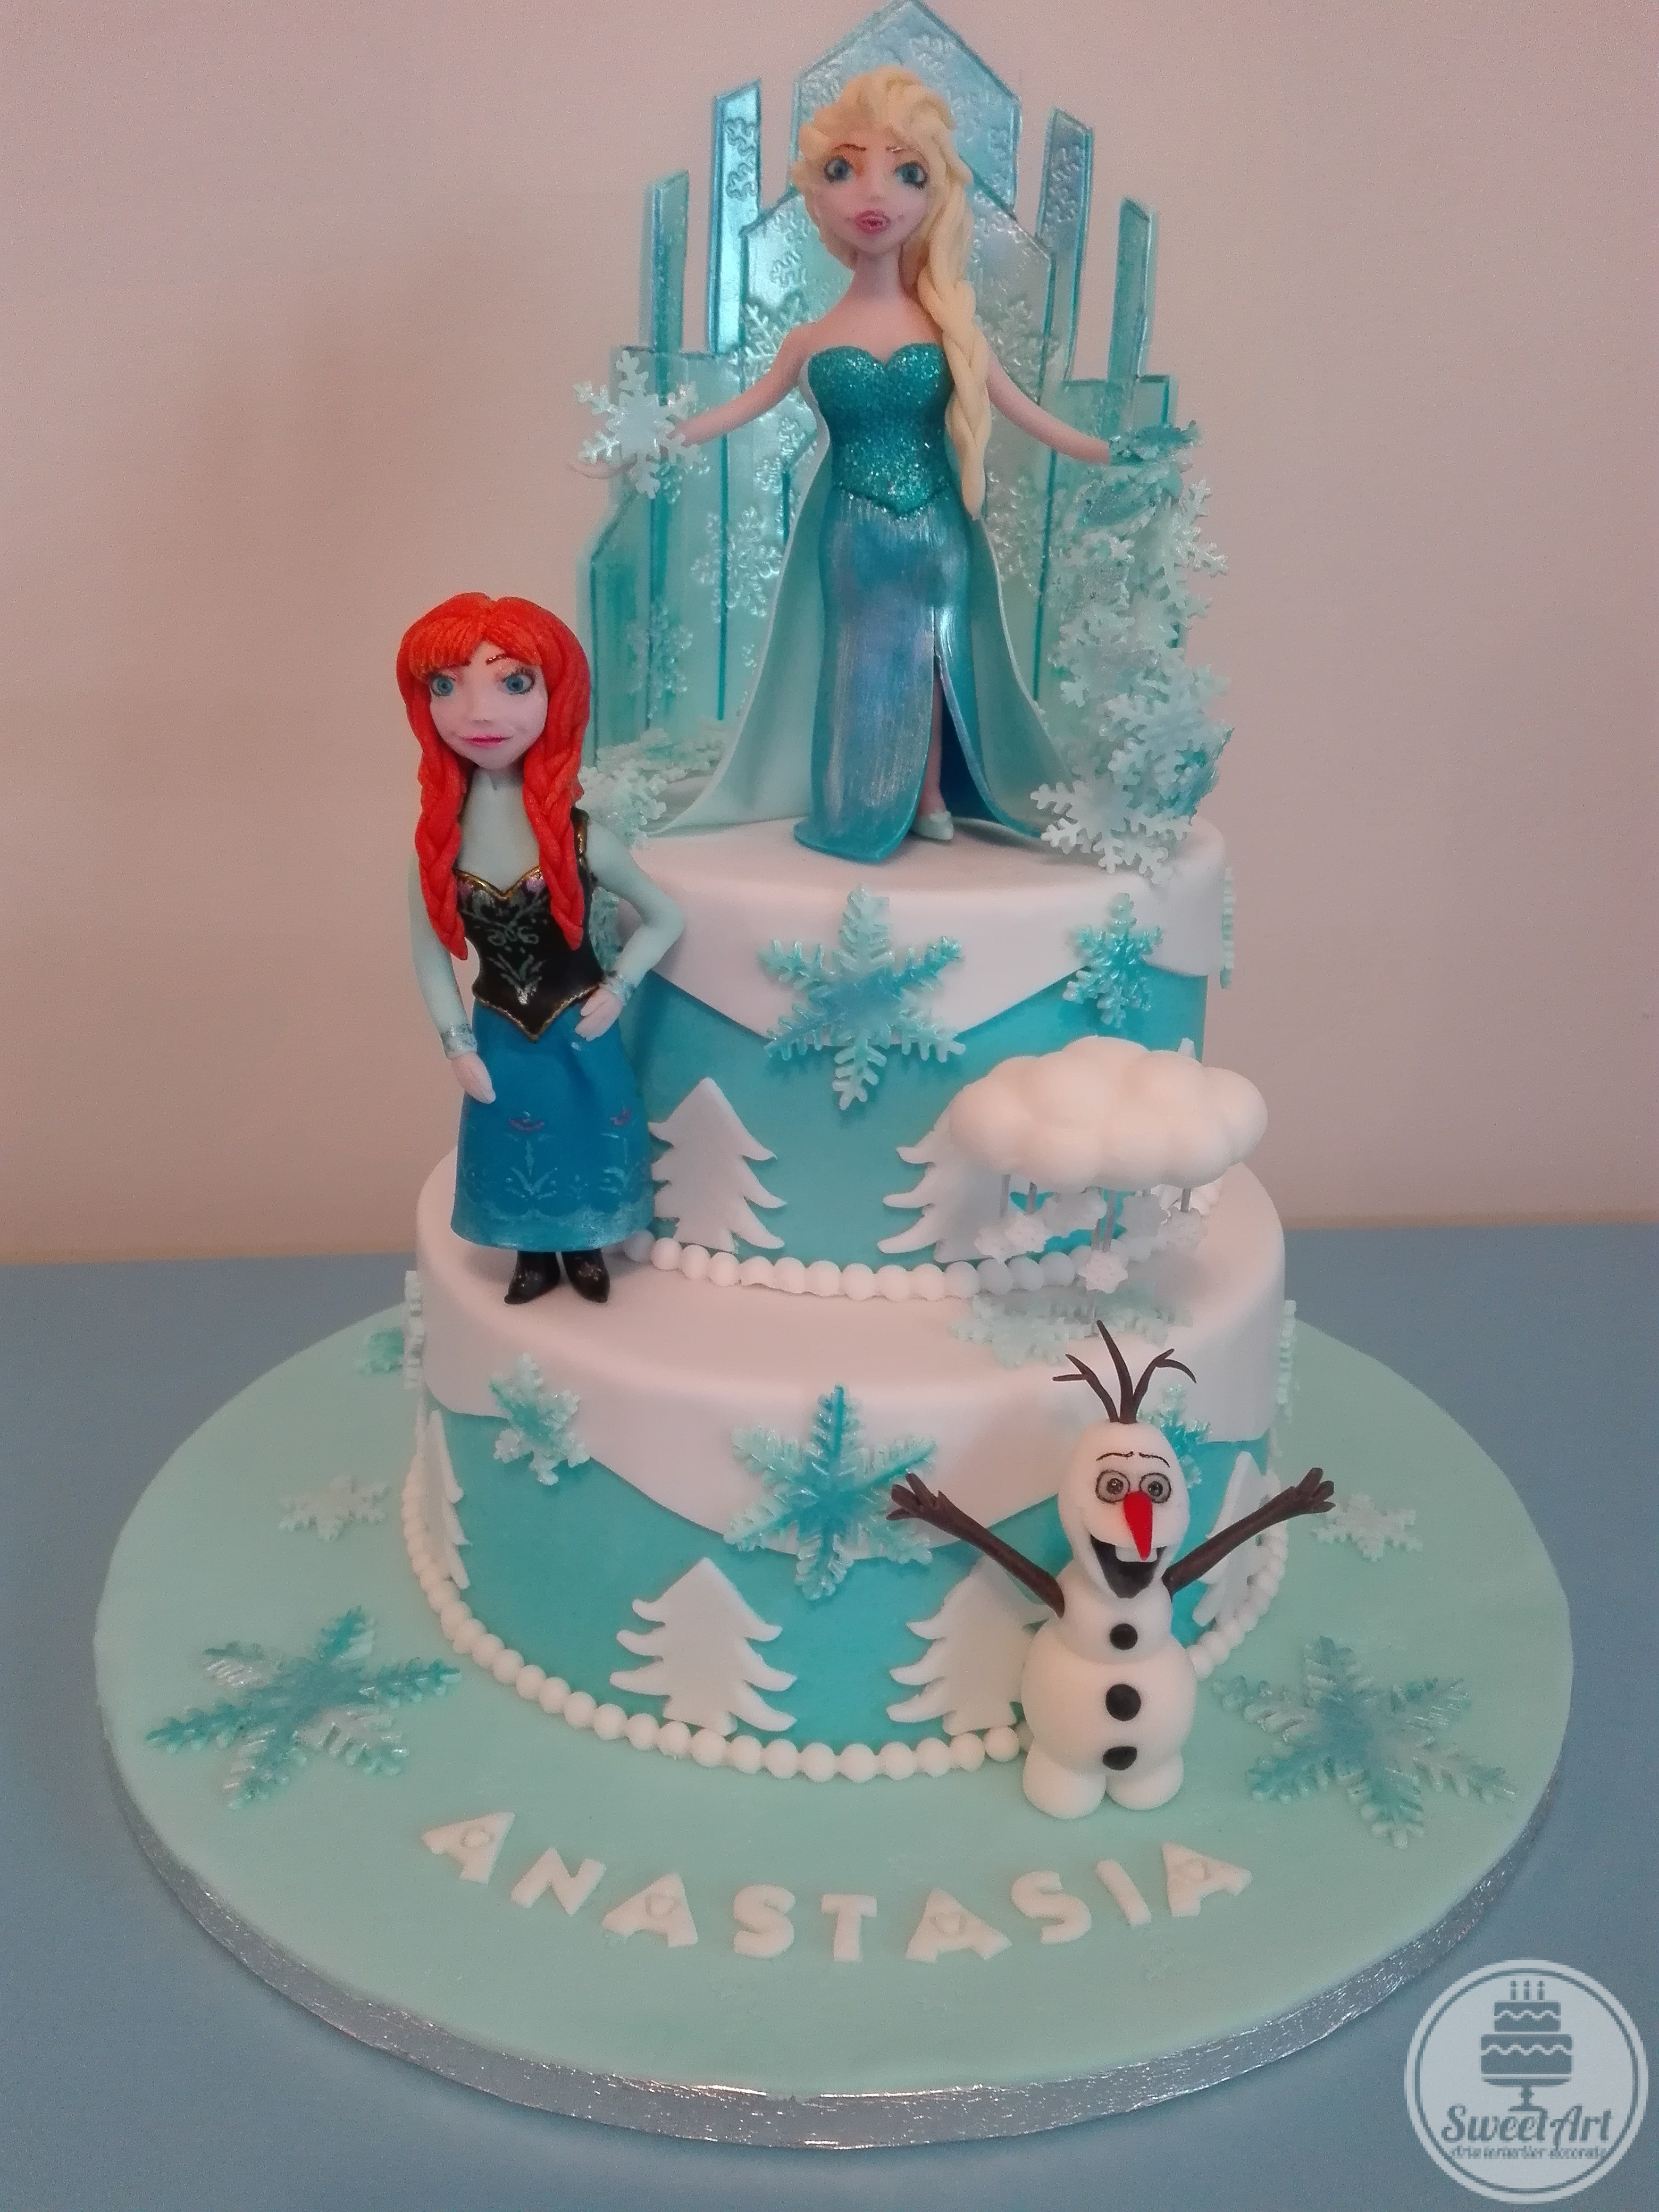 Tort Frozen Regatul de gheață: Elsa - regina gheții cu vraja ei care îngheață şi castelul de gheață, sora ei prințesa Anna, Olaf - omul de zăpadă şi norişorul lui, brazi, mărgele şi fulgi de zăpadă